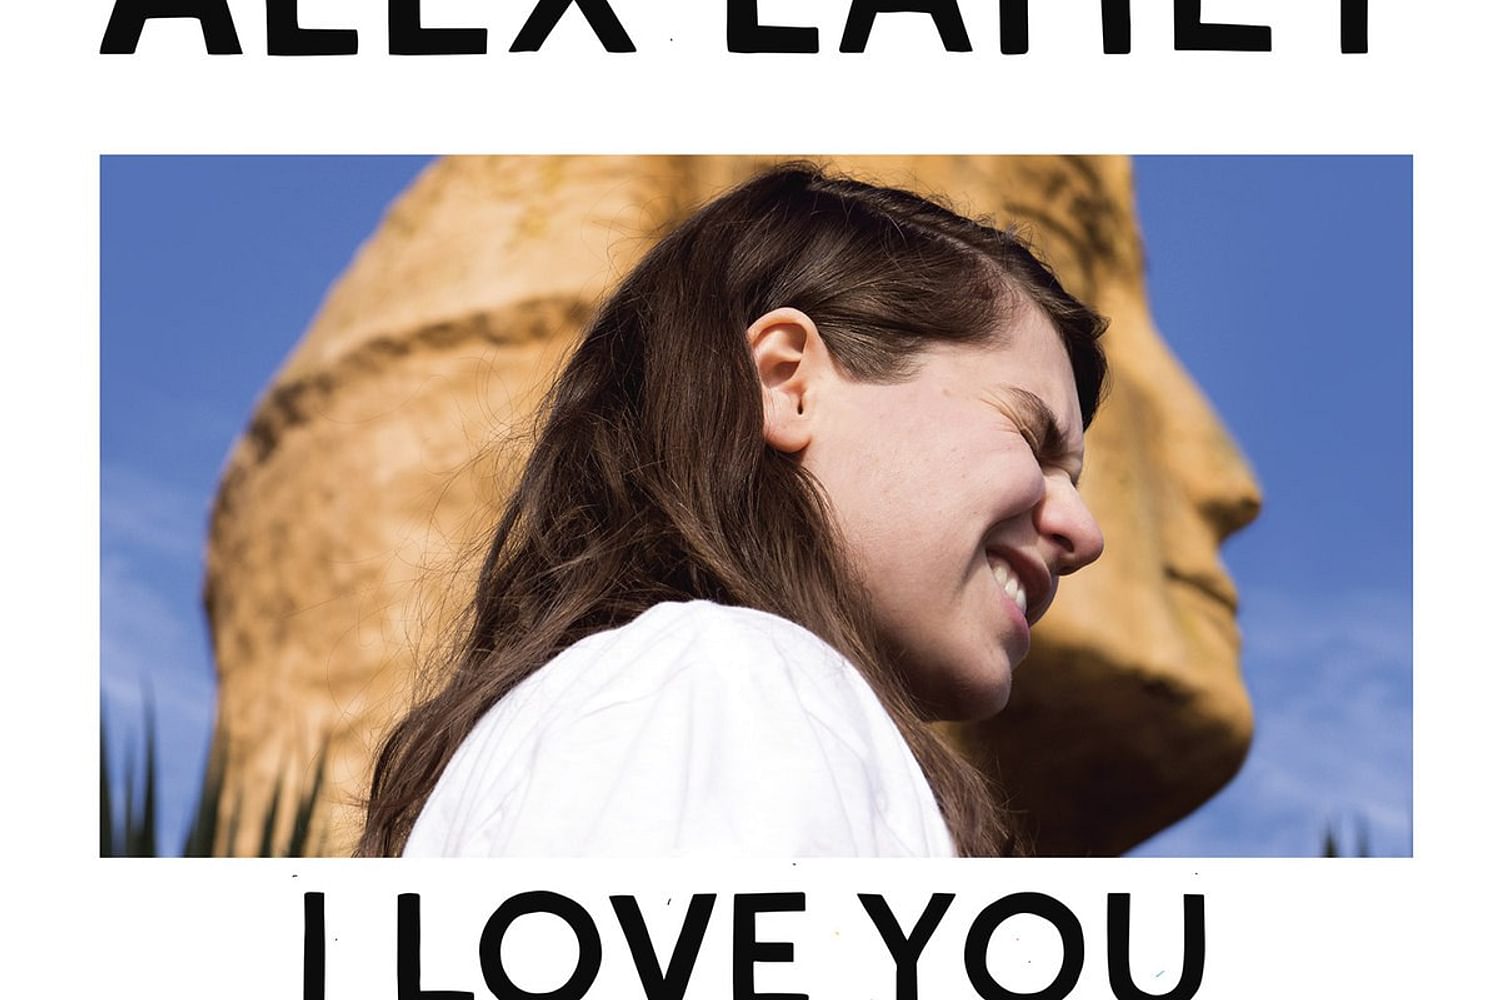 Alex Lahey - I Love You Like A Brother